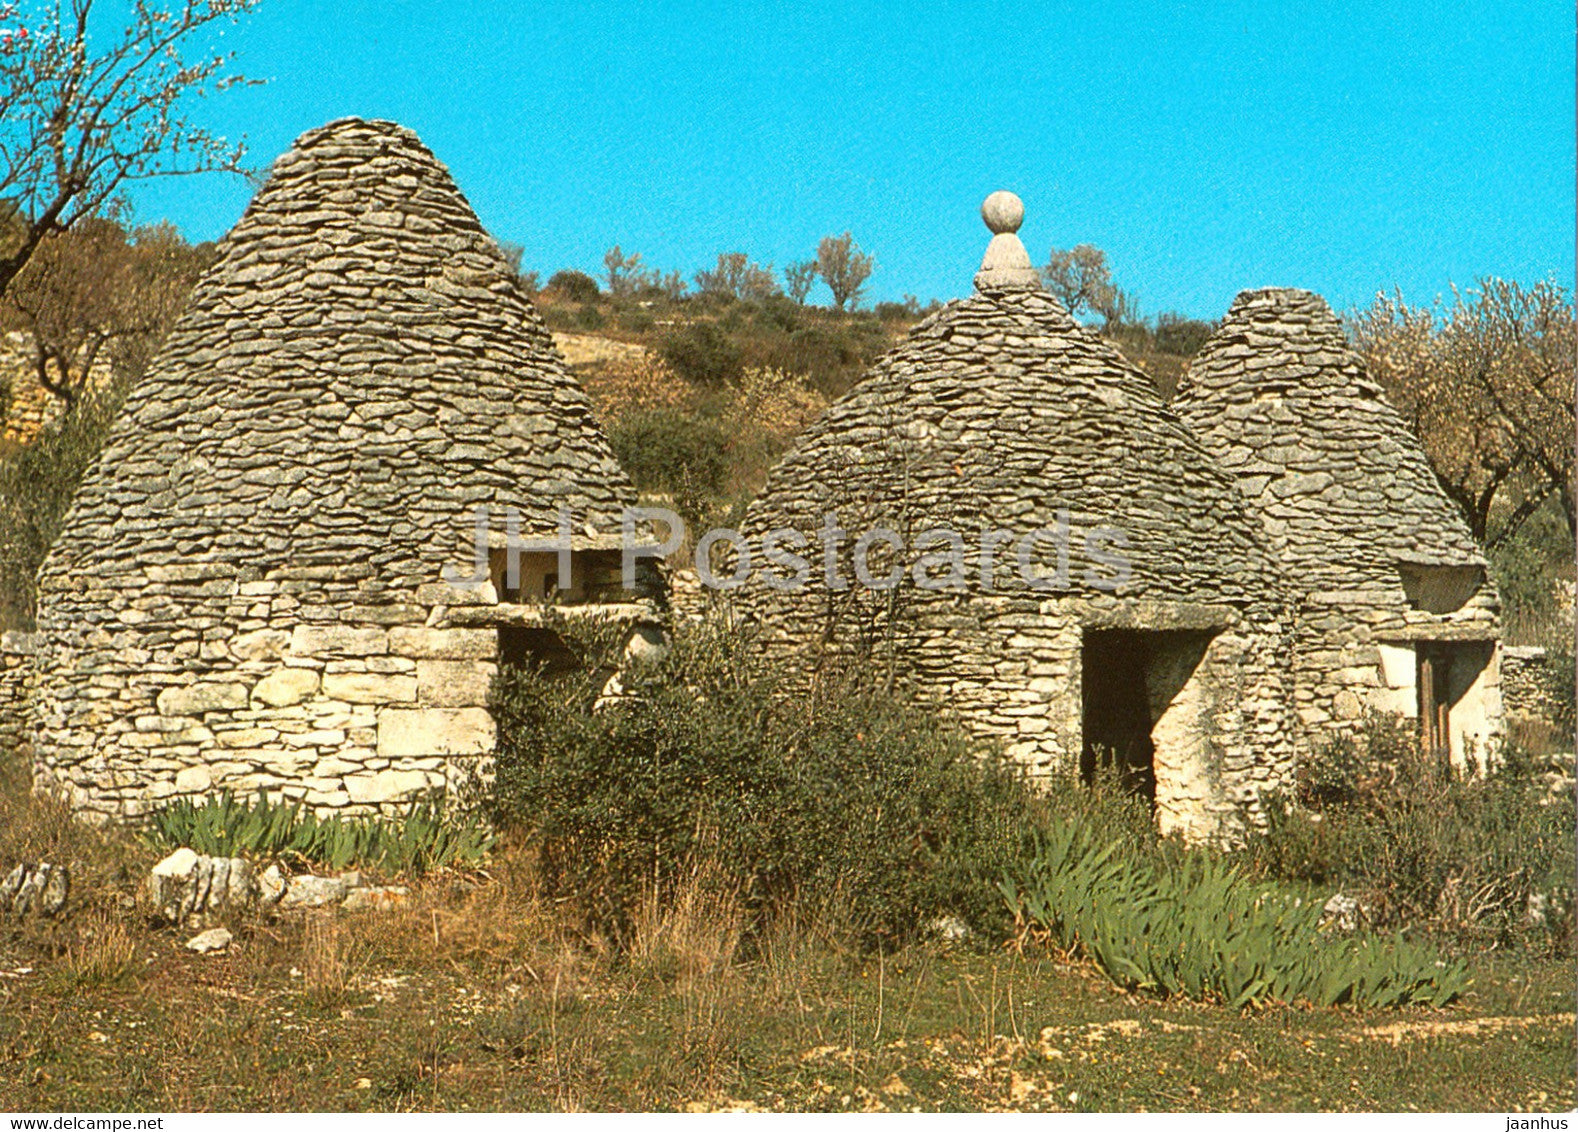 Bories - Cabanes en pierres seches - Les Belles Images de Provence - 3066 - France - unused - JH Postcards